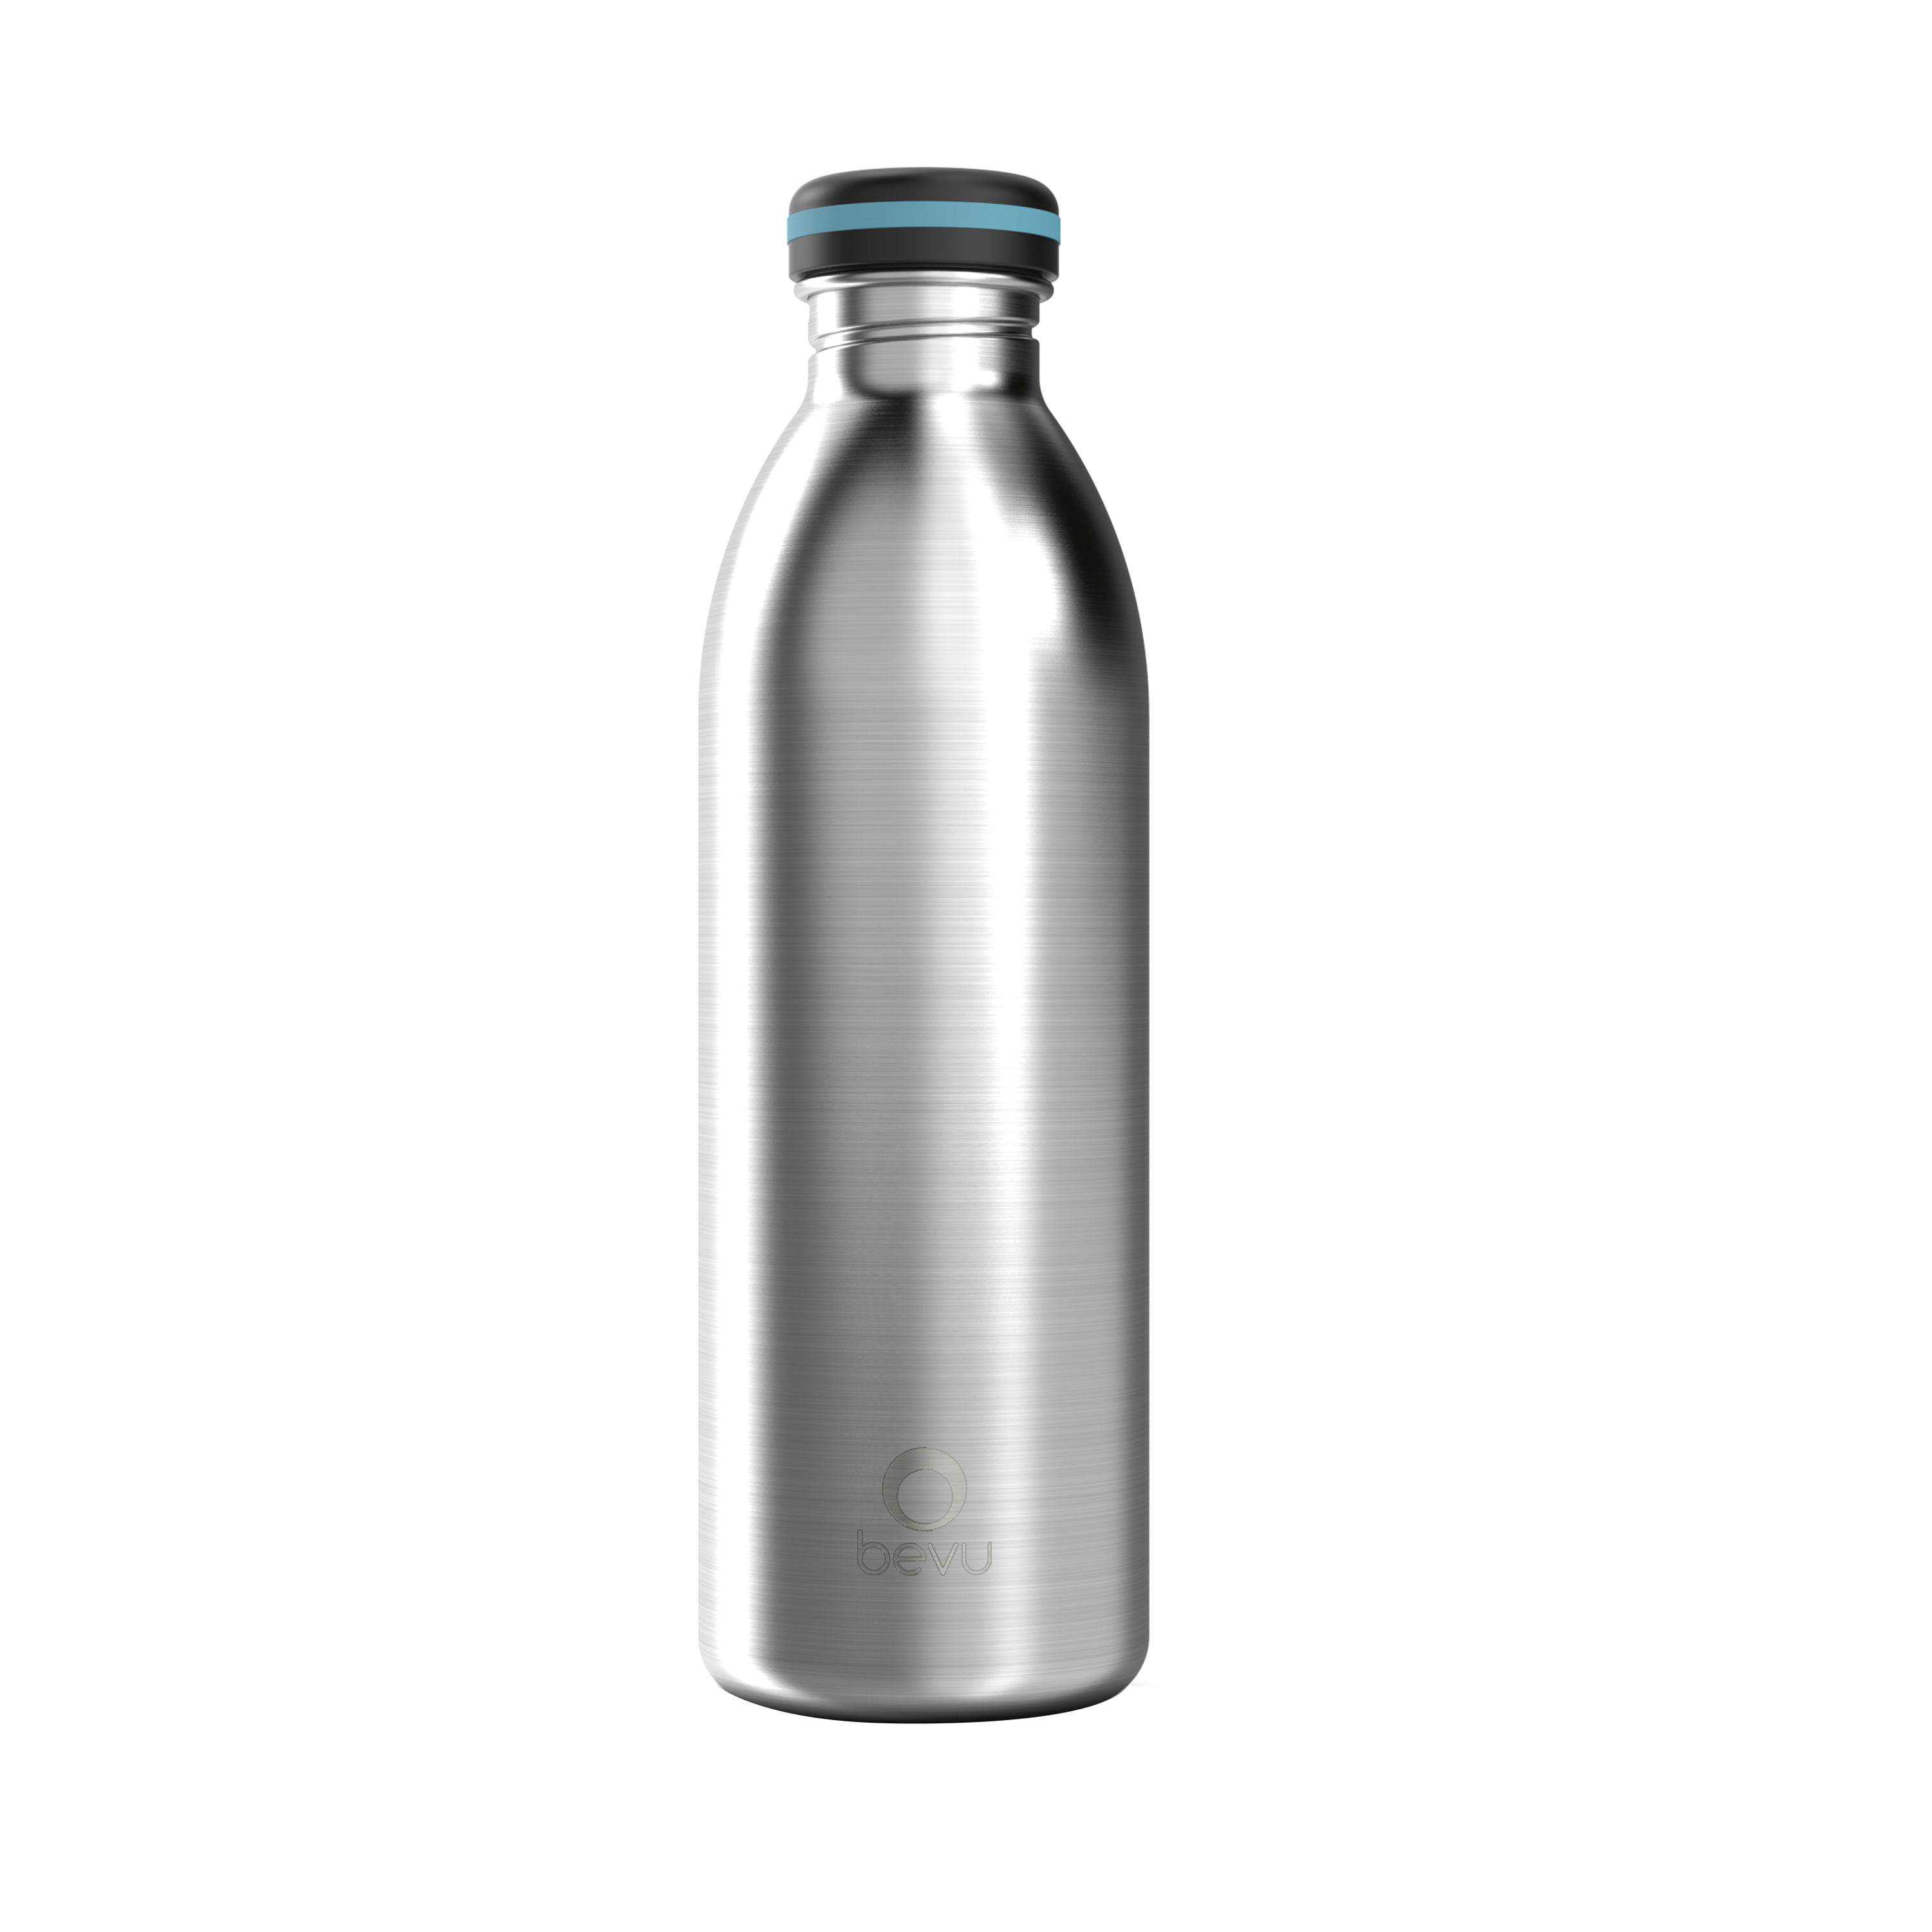 Las mejores botellas de agua de acero inoxidable están a la venta aquí